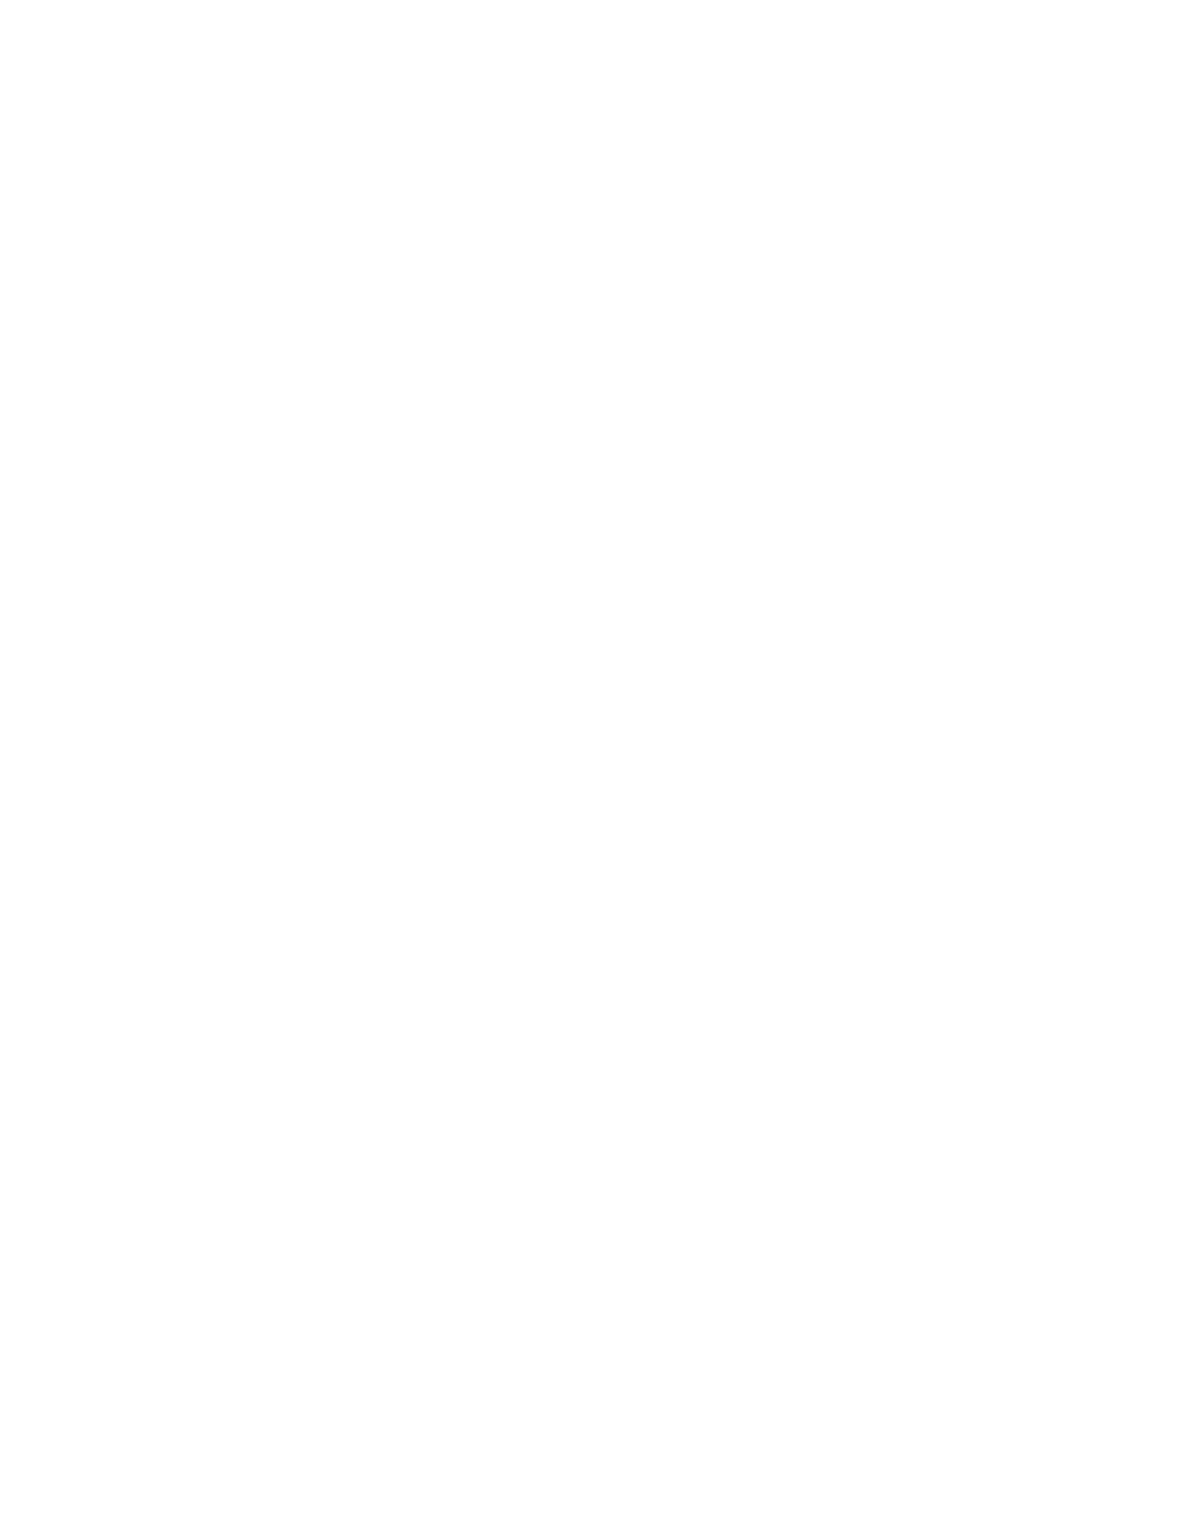 AtriCure logo for dark backgrounds (transparent PNG)